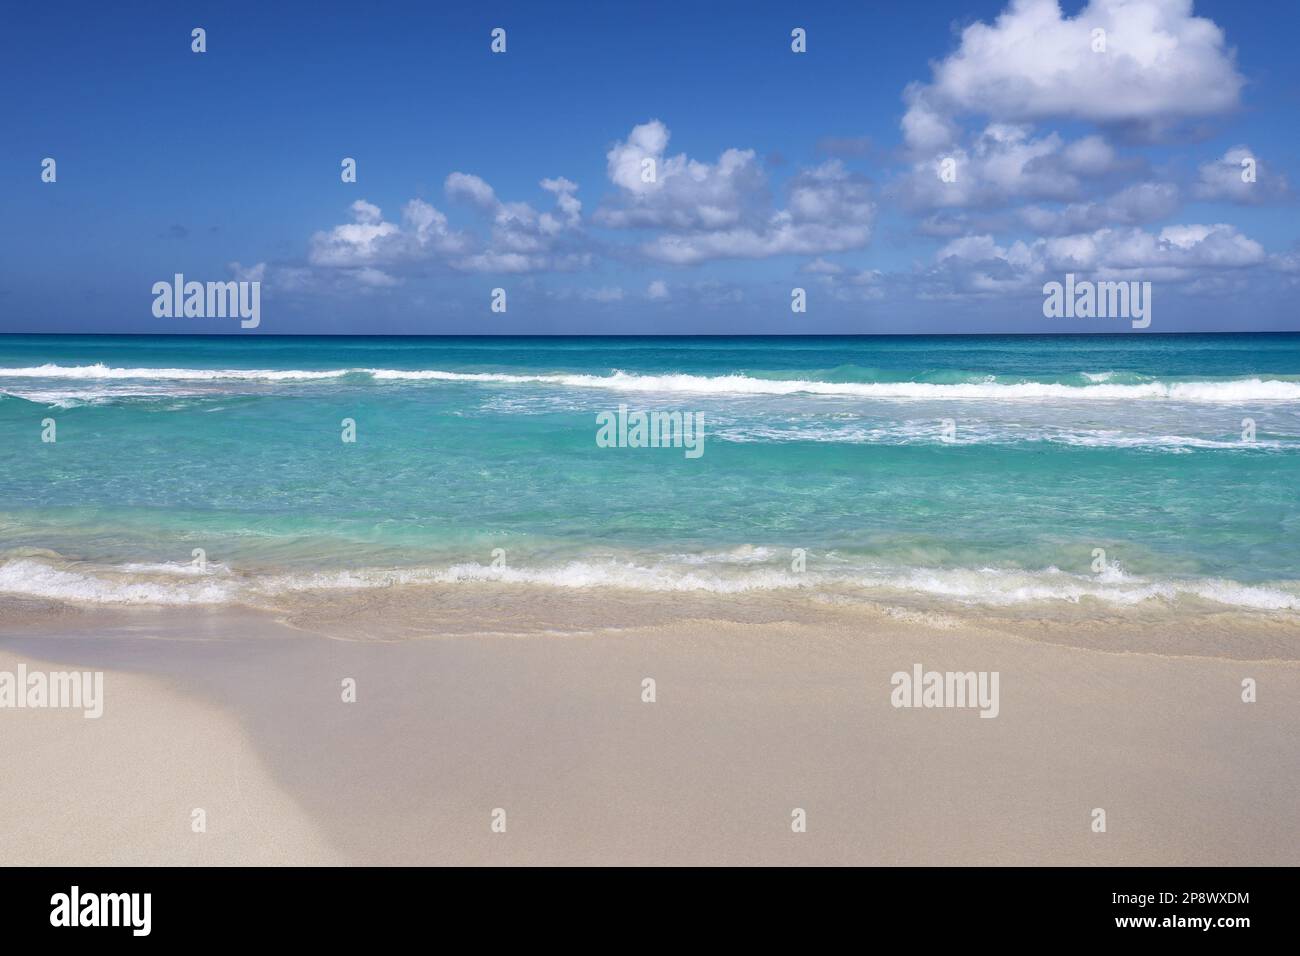 Plage tropicale avec sable blanc sur un océan, vue sur les vagues d'azur et le ciel avec des nuages. Côte des Caraïbes, arrière-plan pour des vacances sur une nature paradisiaque Banque D'Images